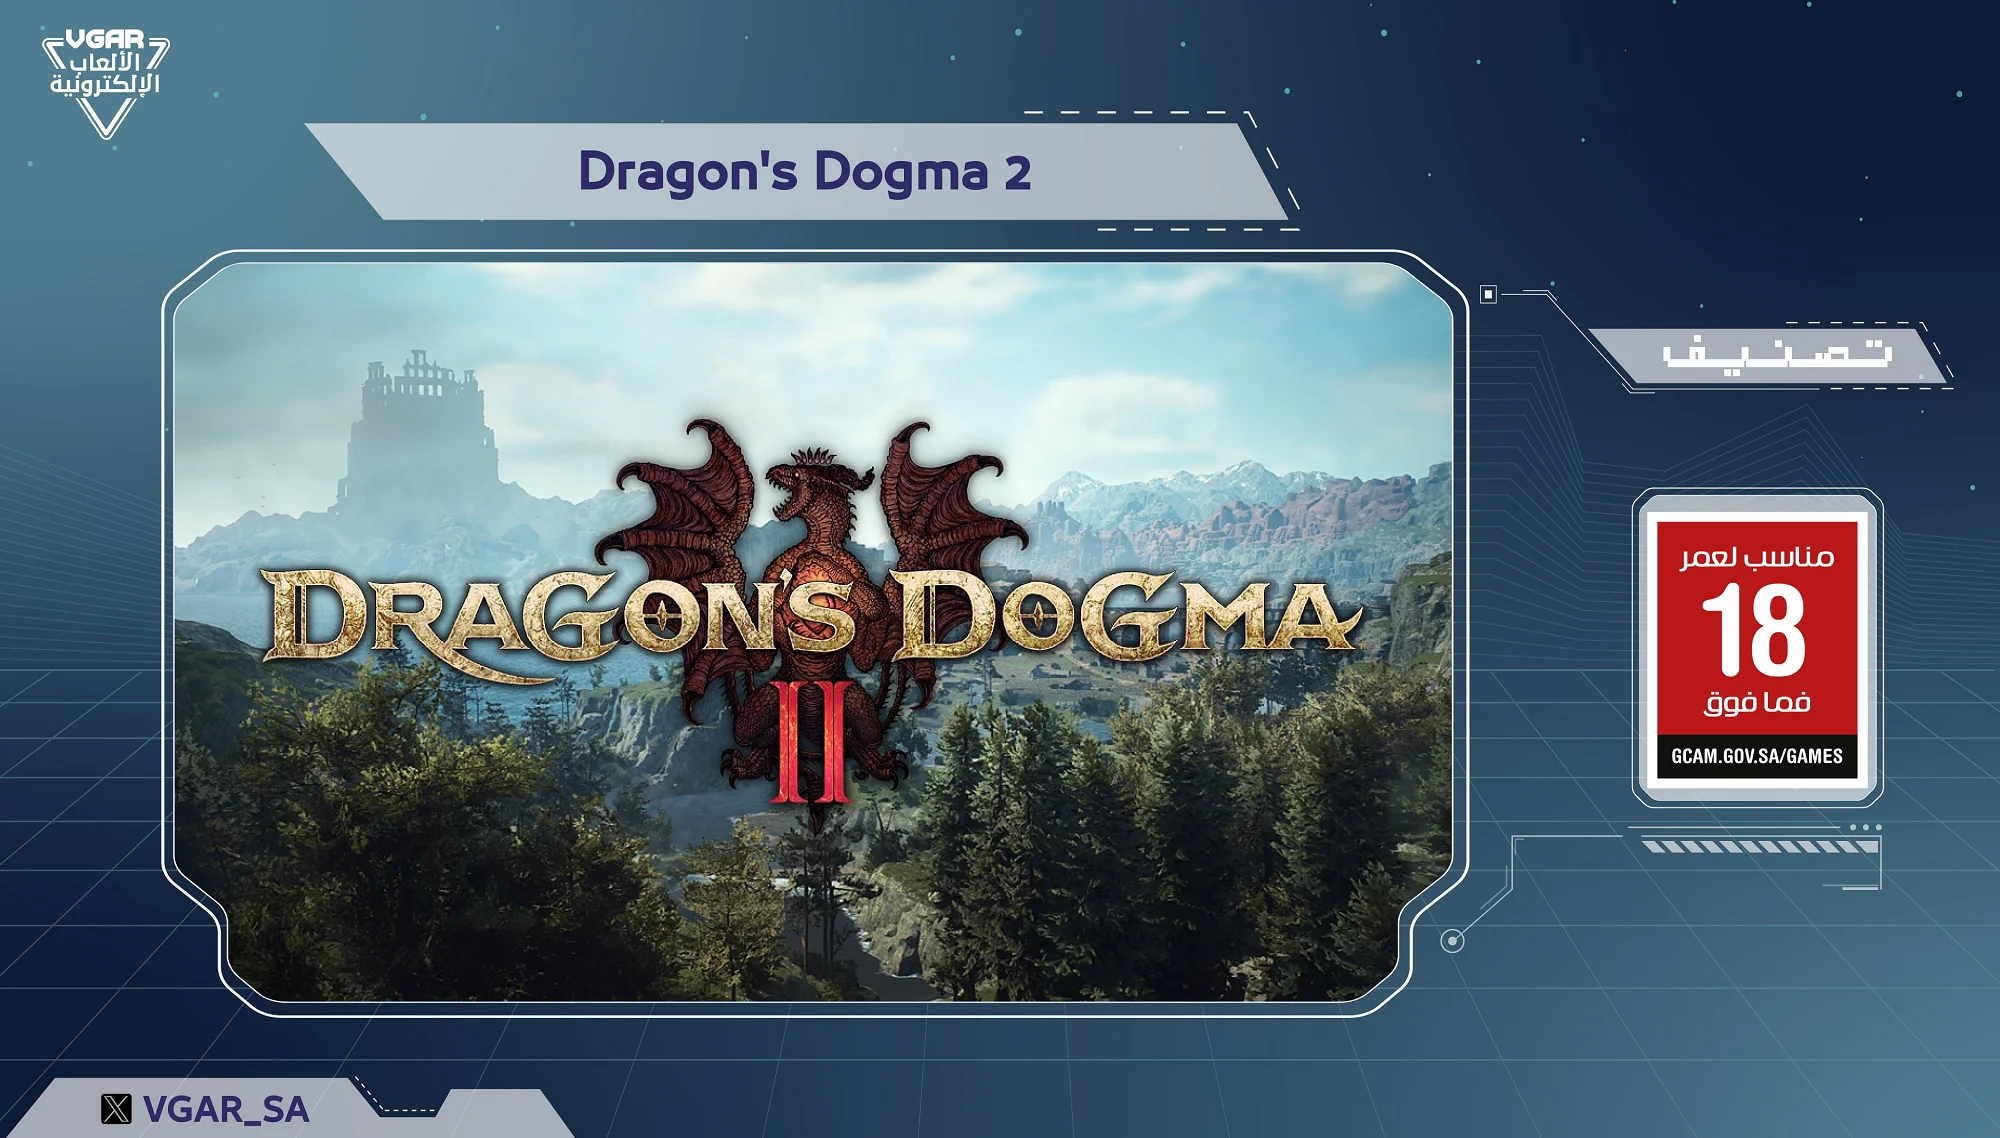 Dragonʼs Dogma 2 получила рейтинг 18+ в Саудовской Аравии - фото 1